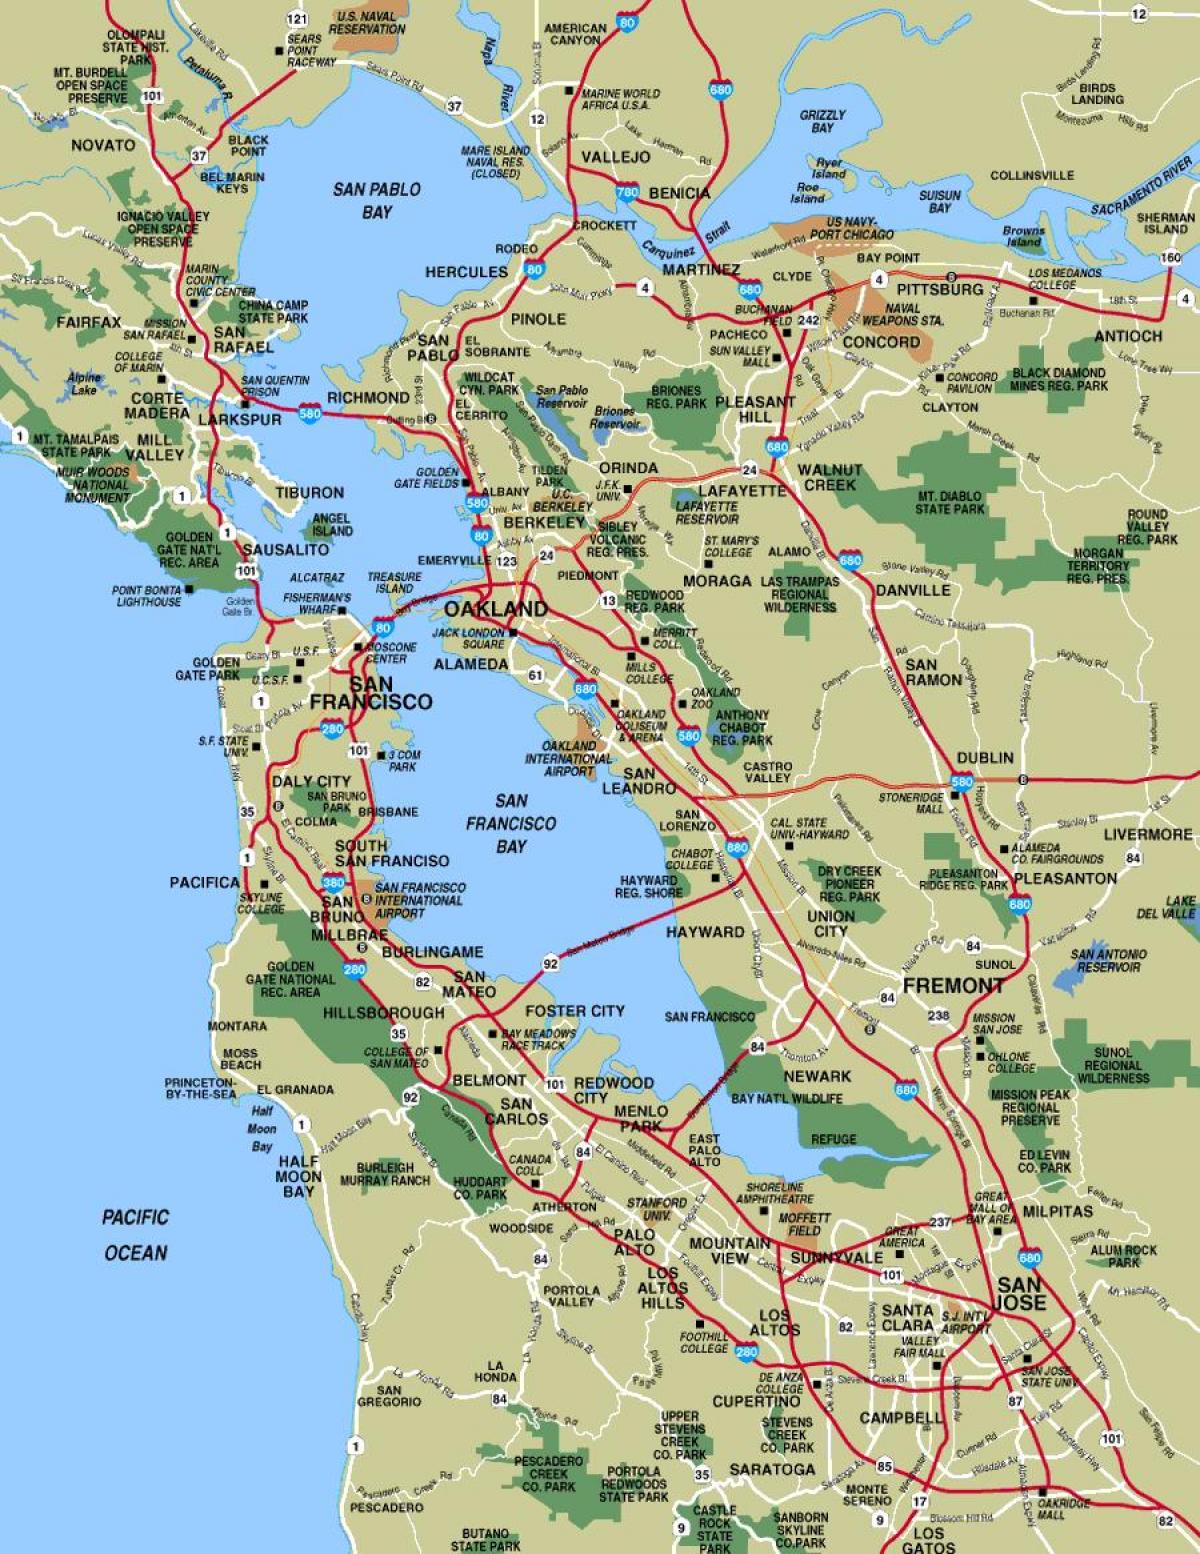 Mapu San Francisco area miest